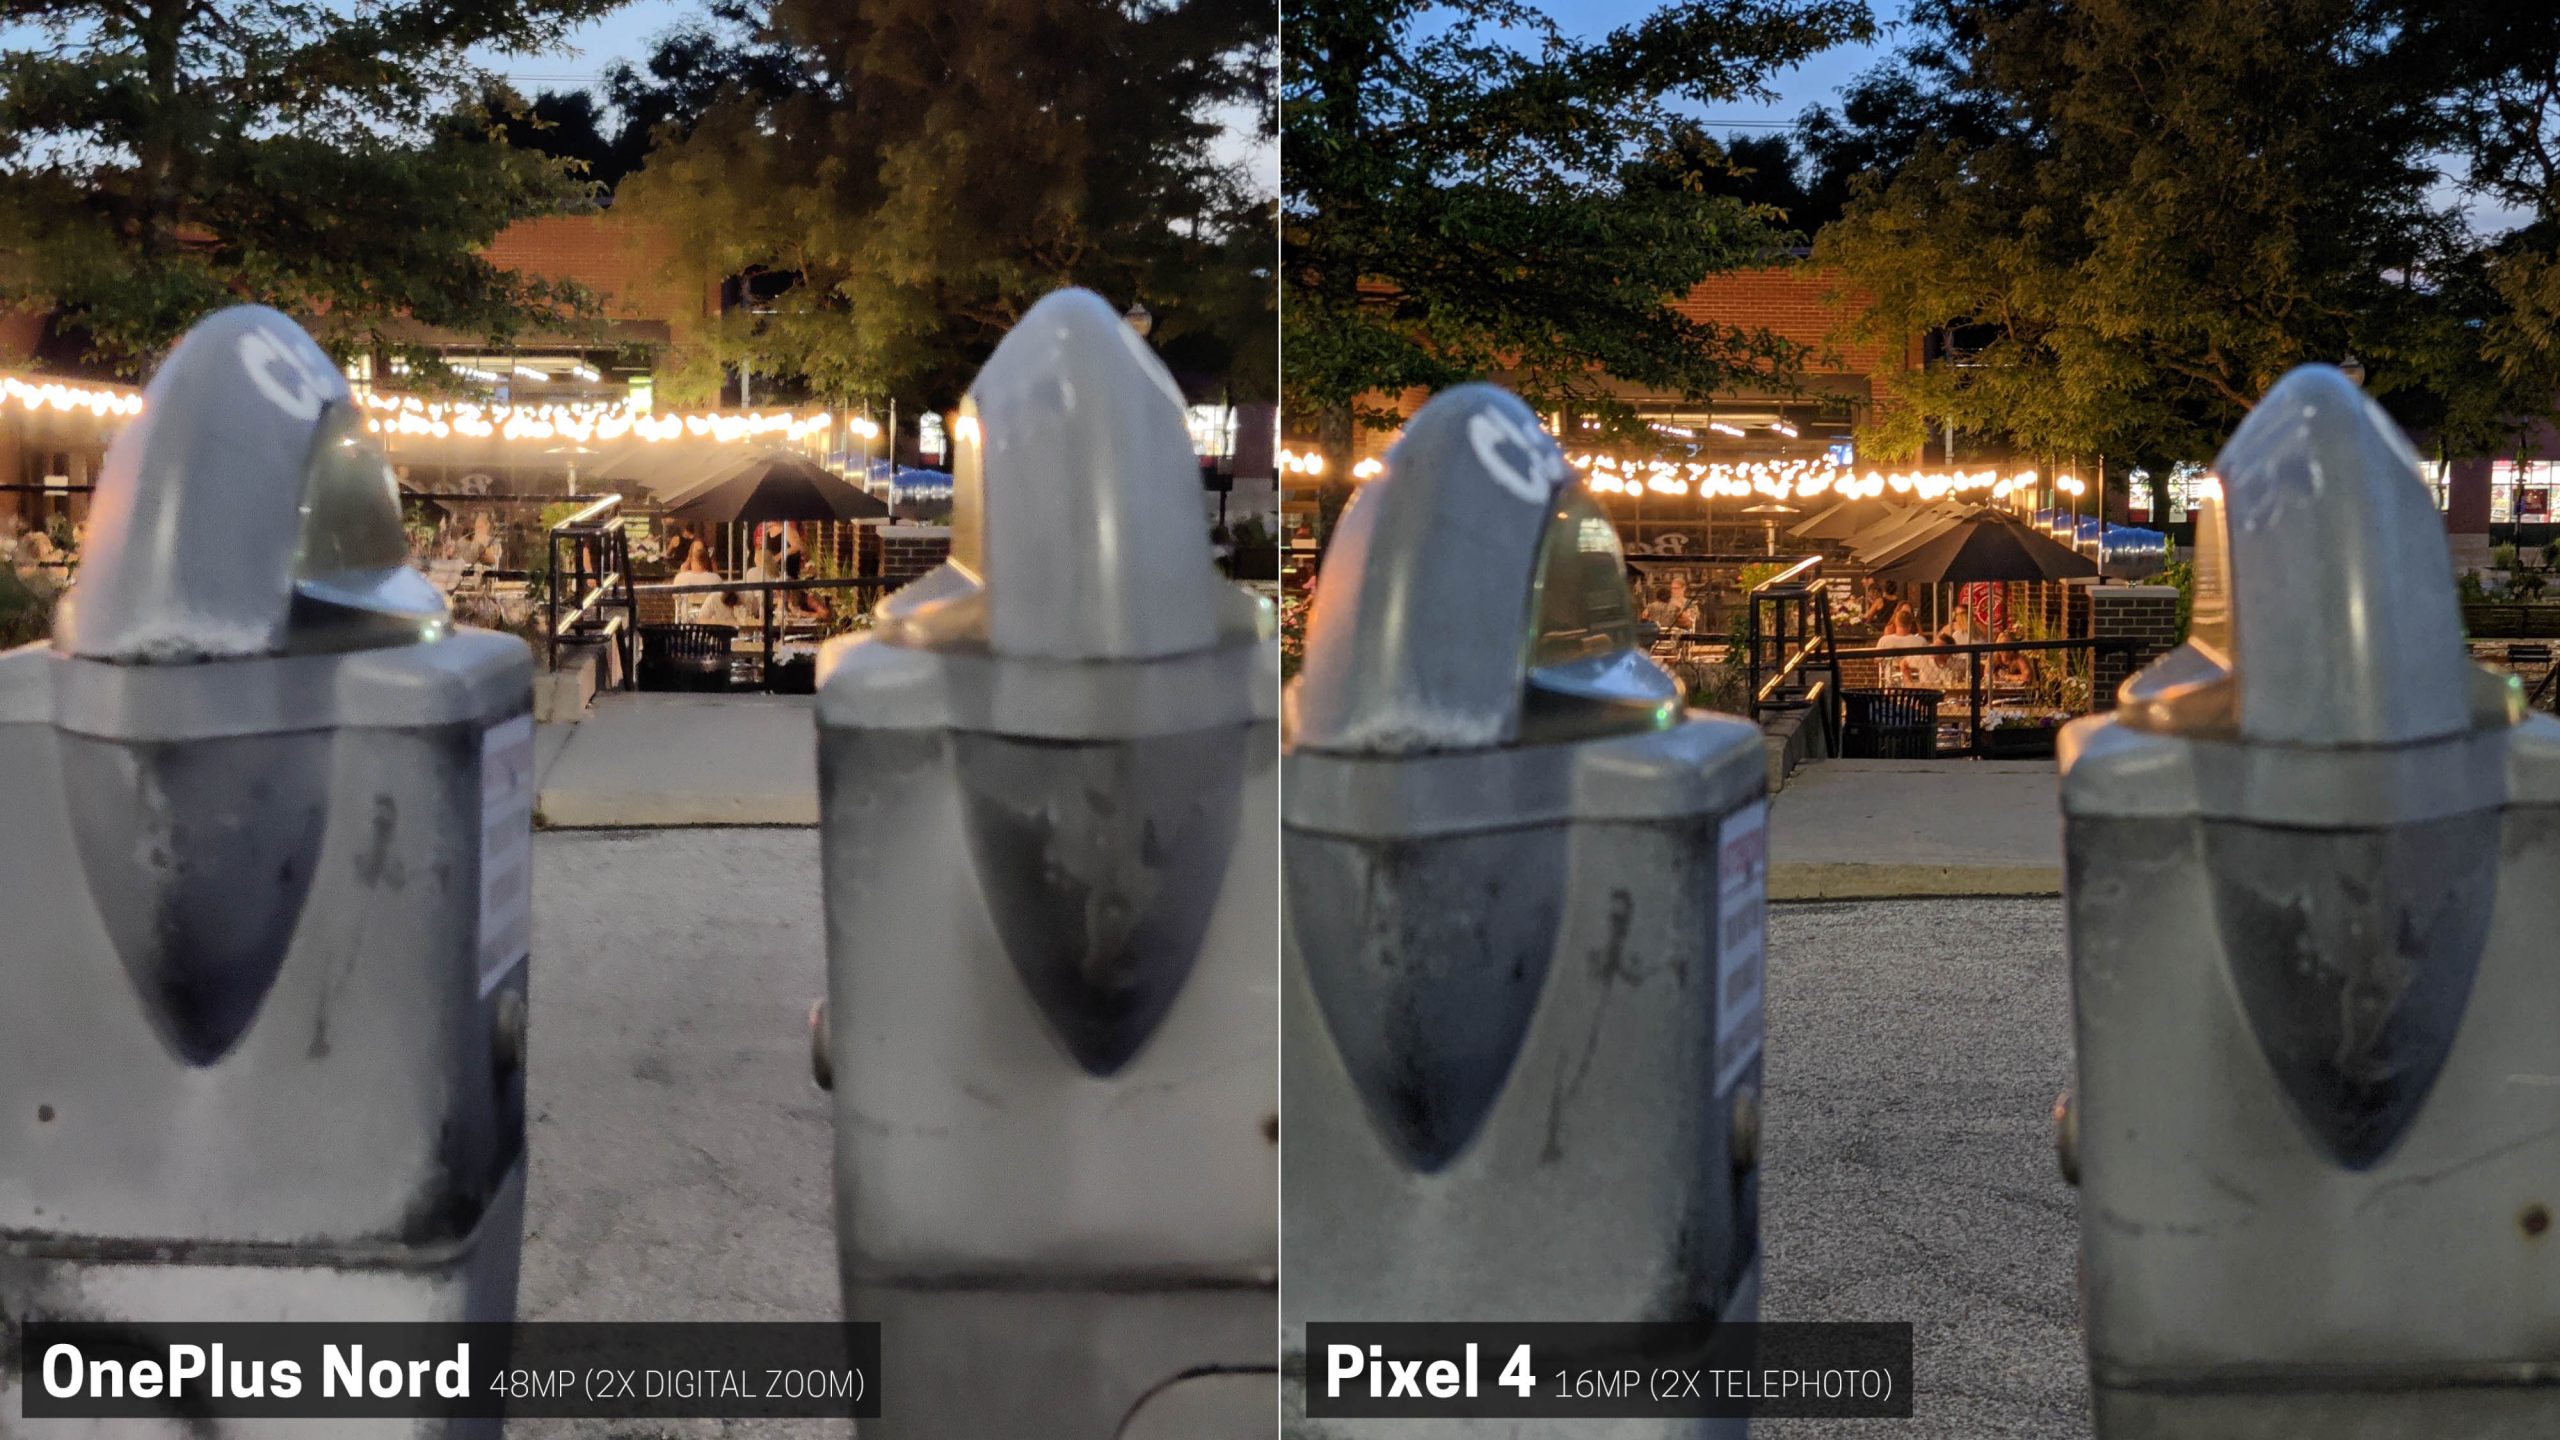 Pixel 4 melenyapkan OnePlus Nord dalam perbandingan kamera 26